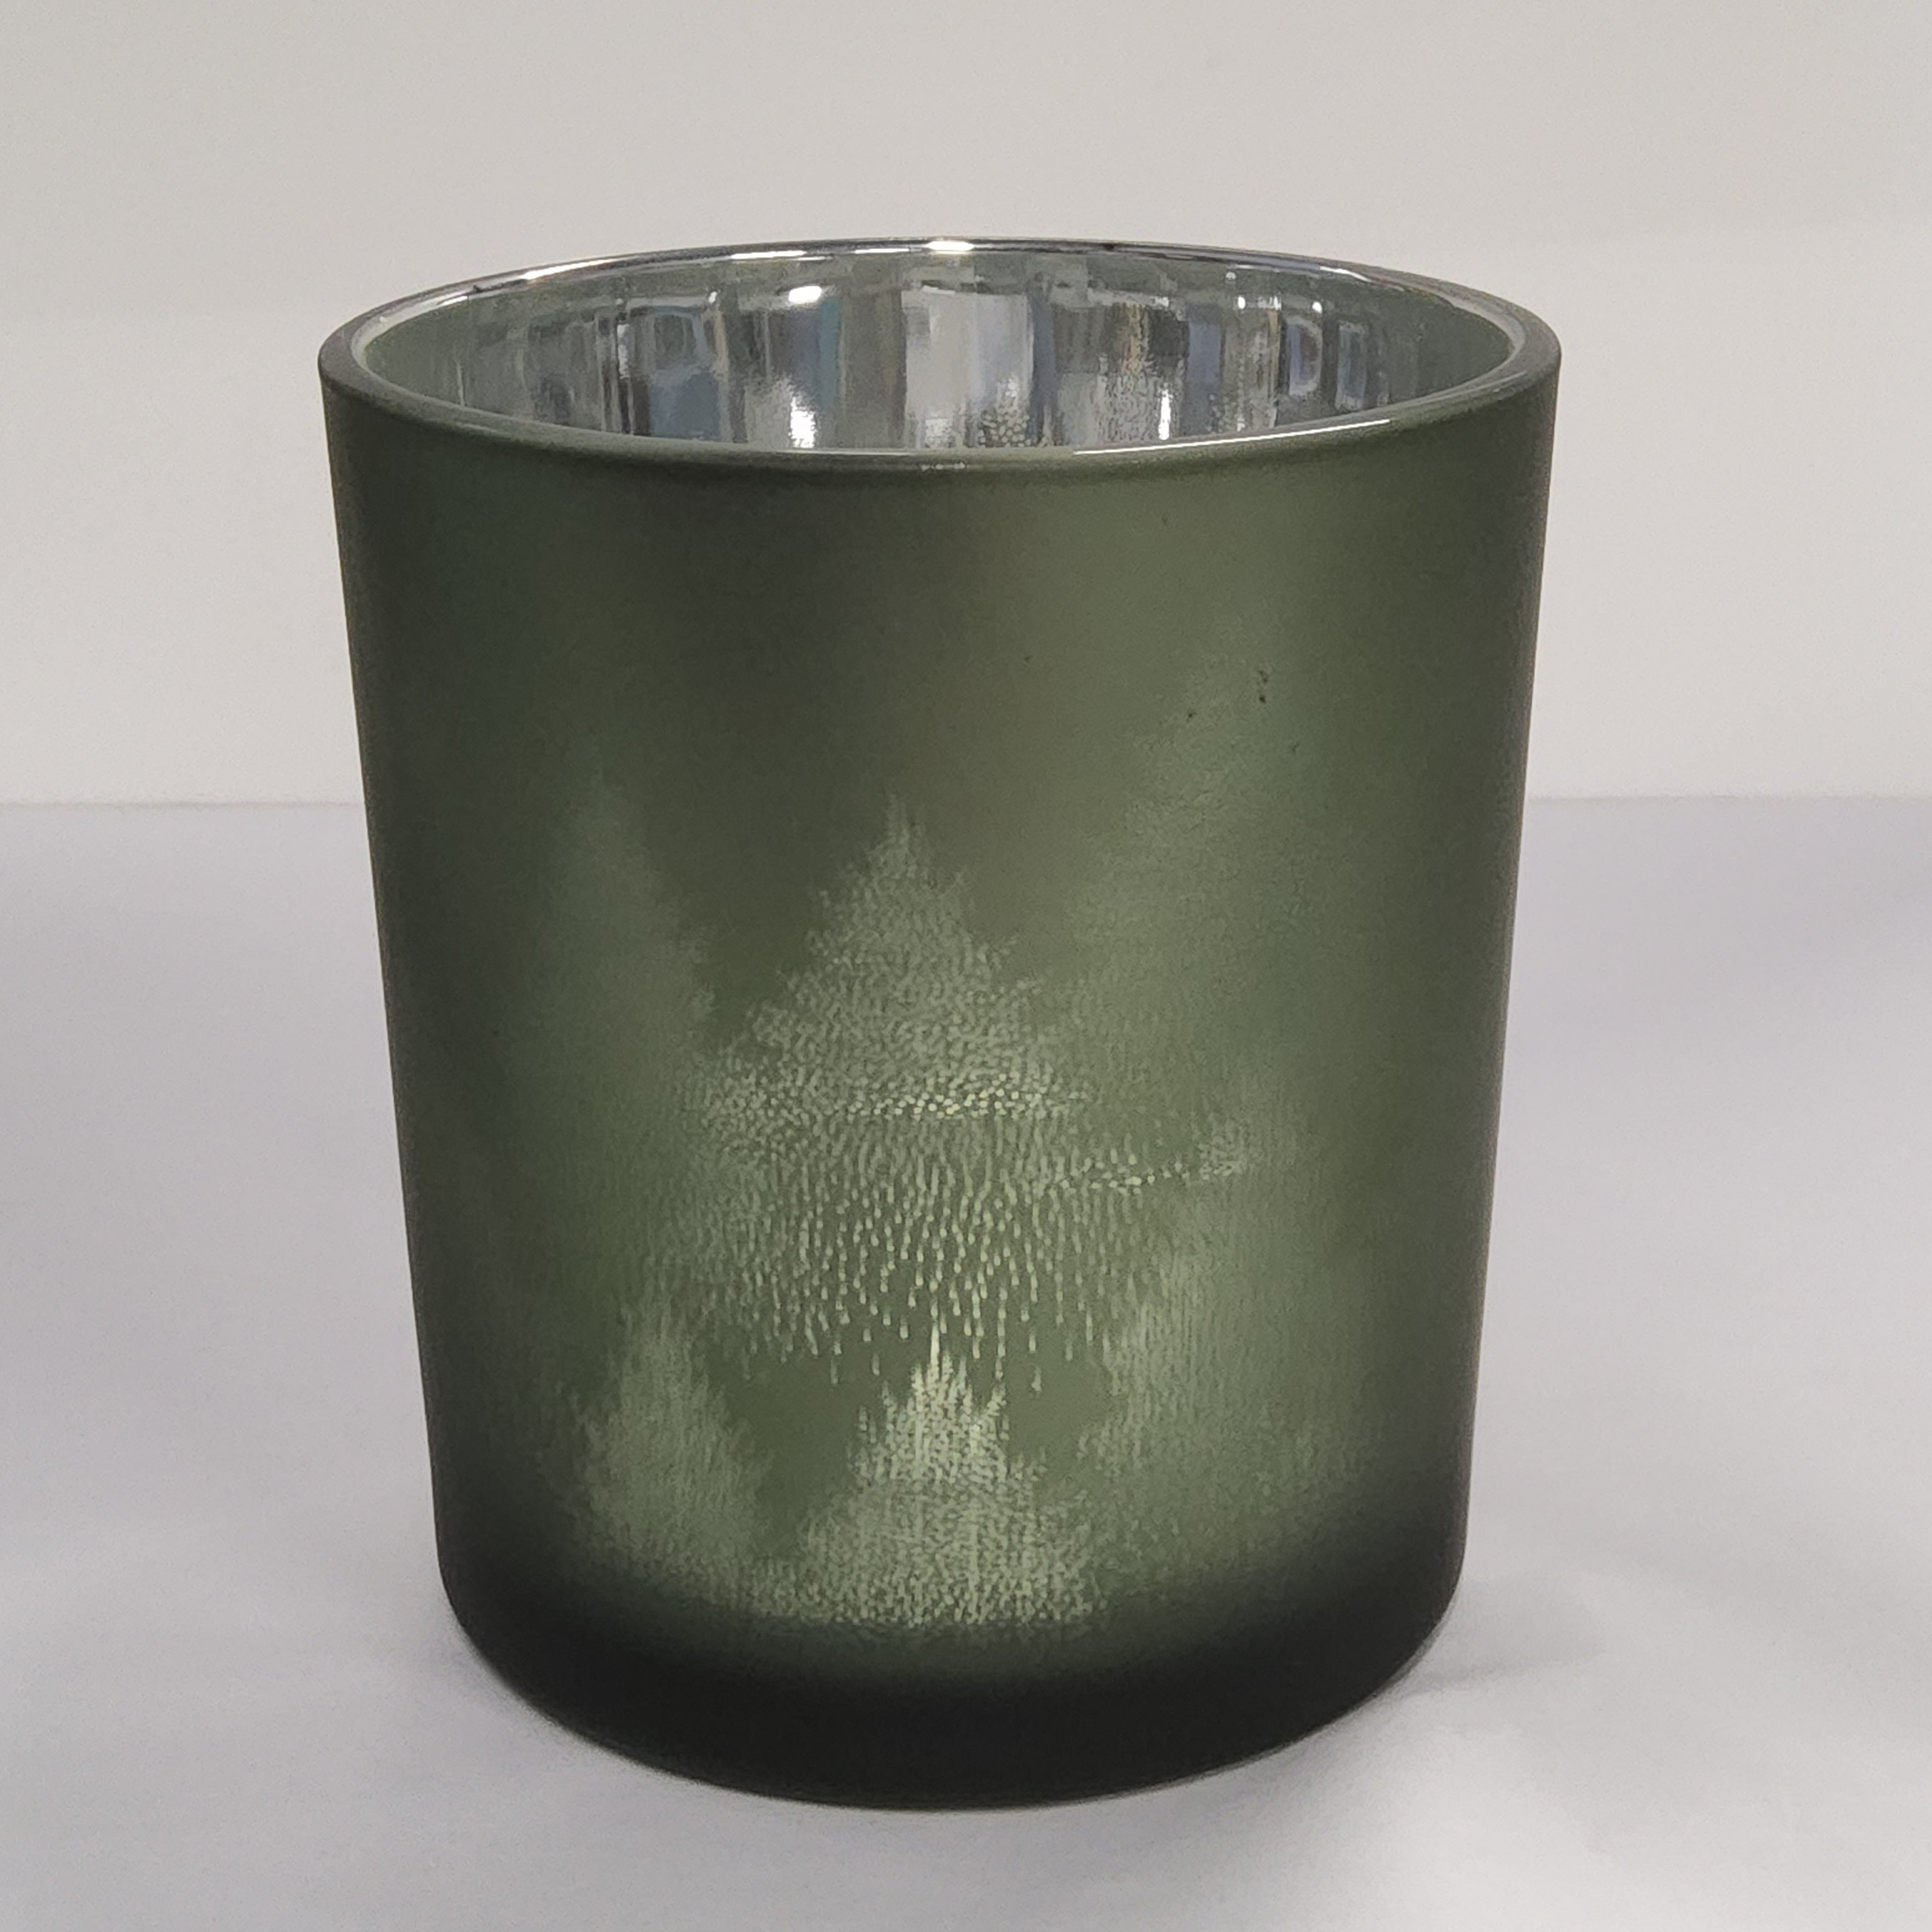 Glass Hurricane Vase - Evergreen Forest - 3x3"